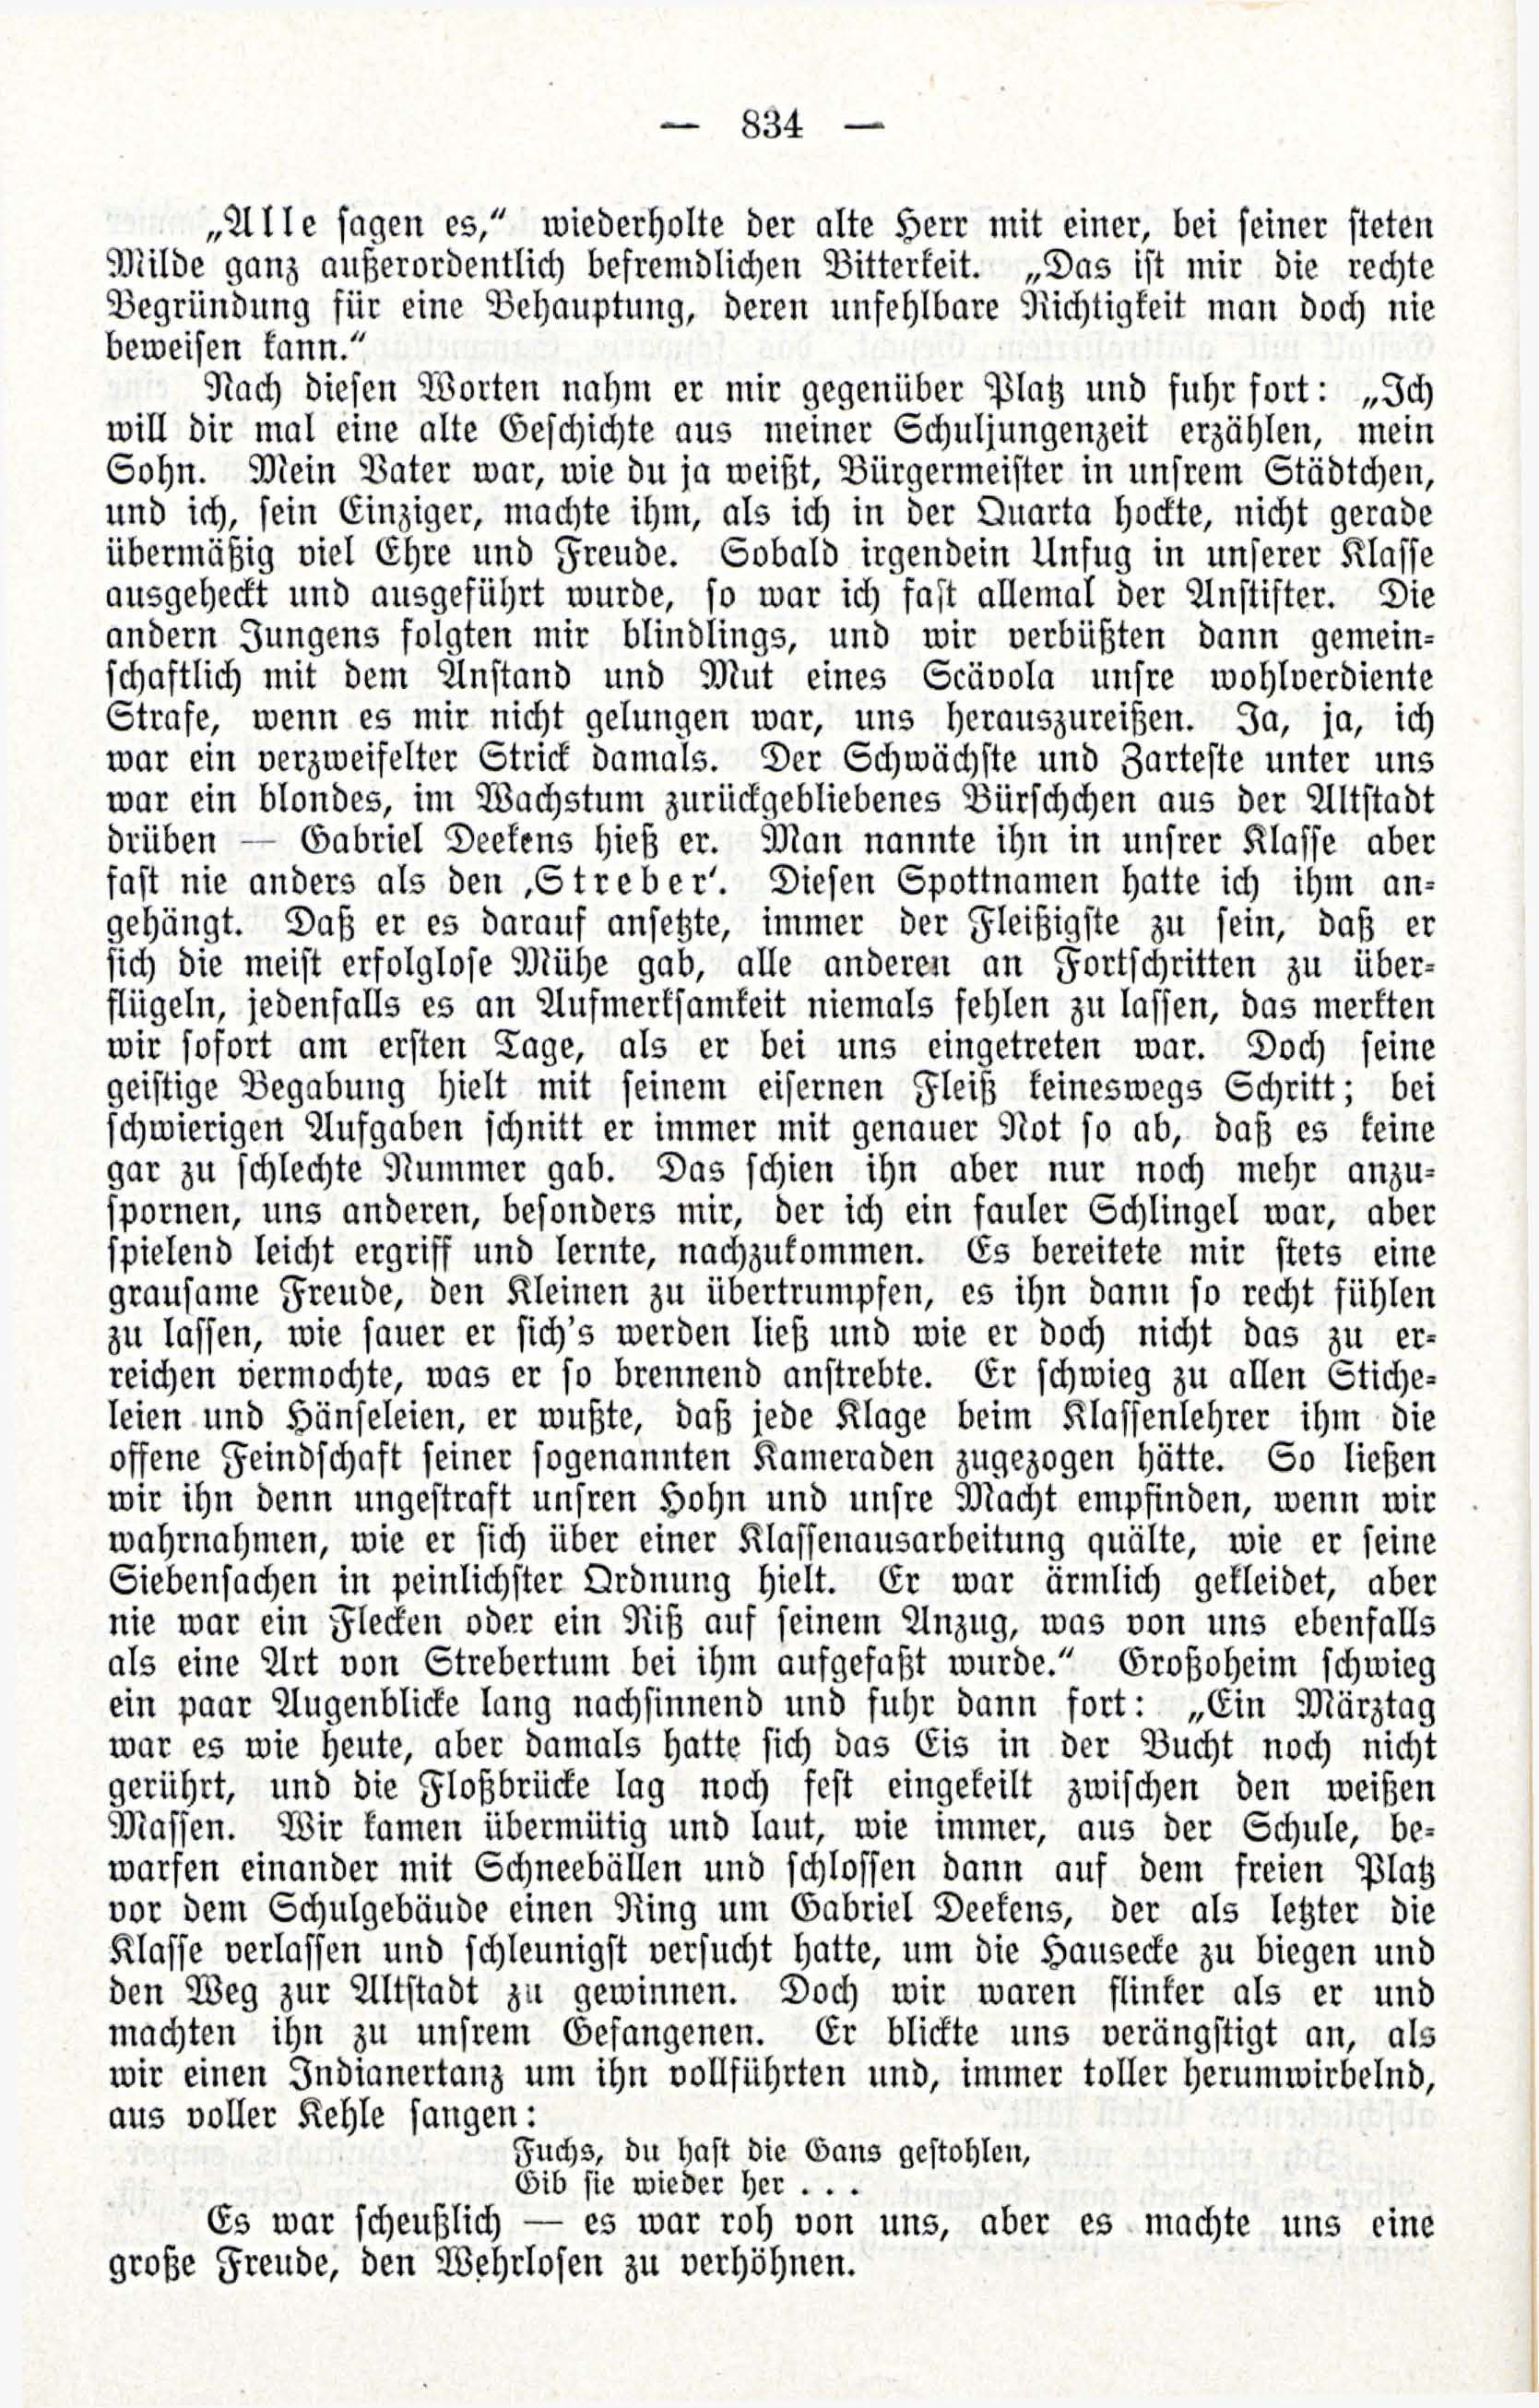 Deutsche Monatsschrift für Russland [3/12] (1914) | 50. (834) Main body of text